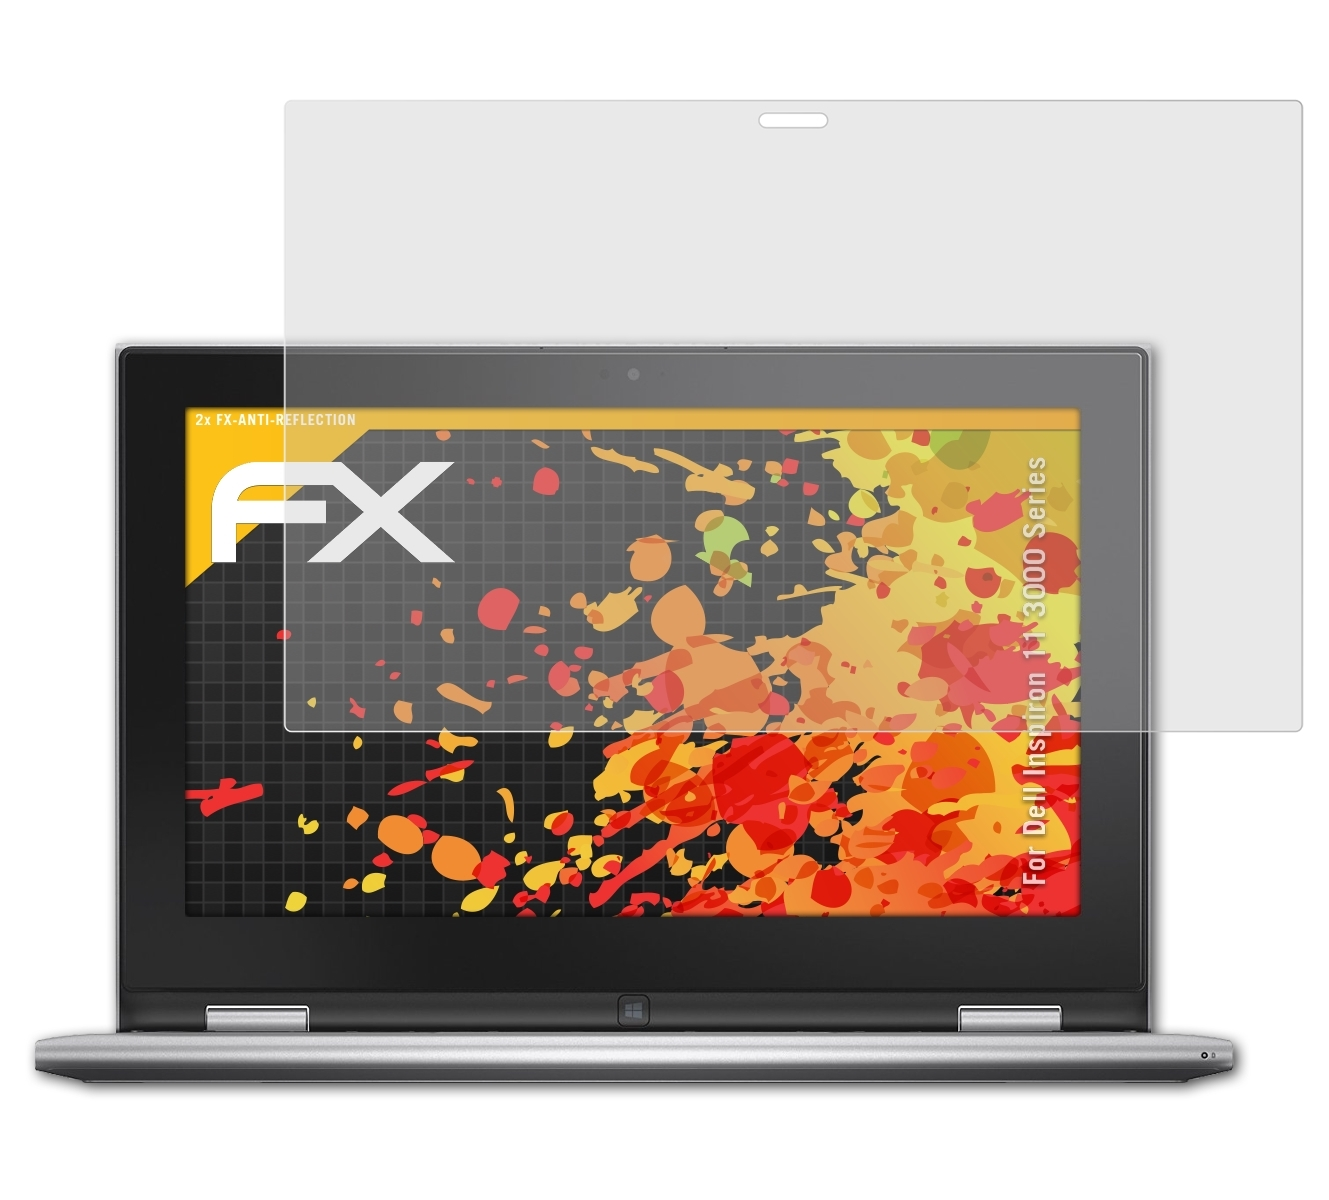 ATFOLIX 2x (3000 Series)) Inspiron FX-Antireflex Displayschutz(für Dell 11